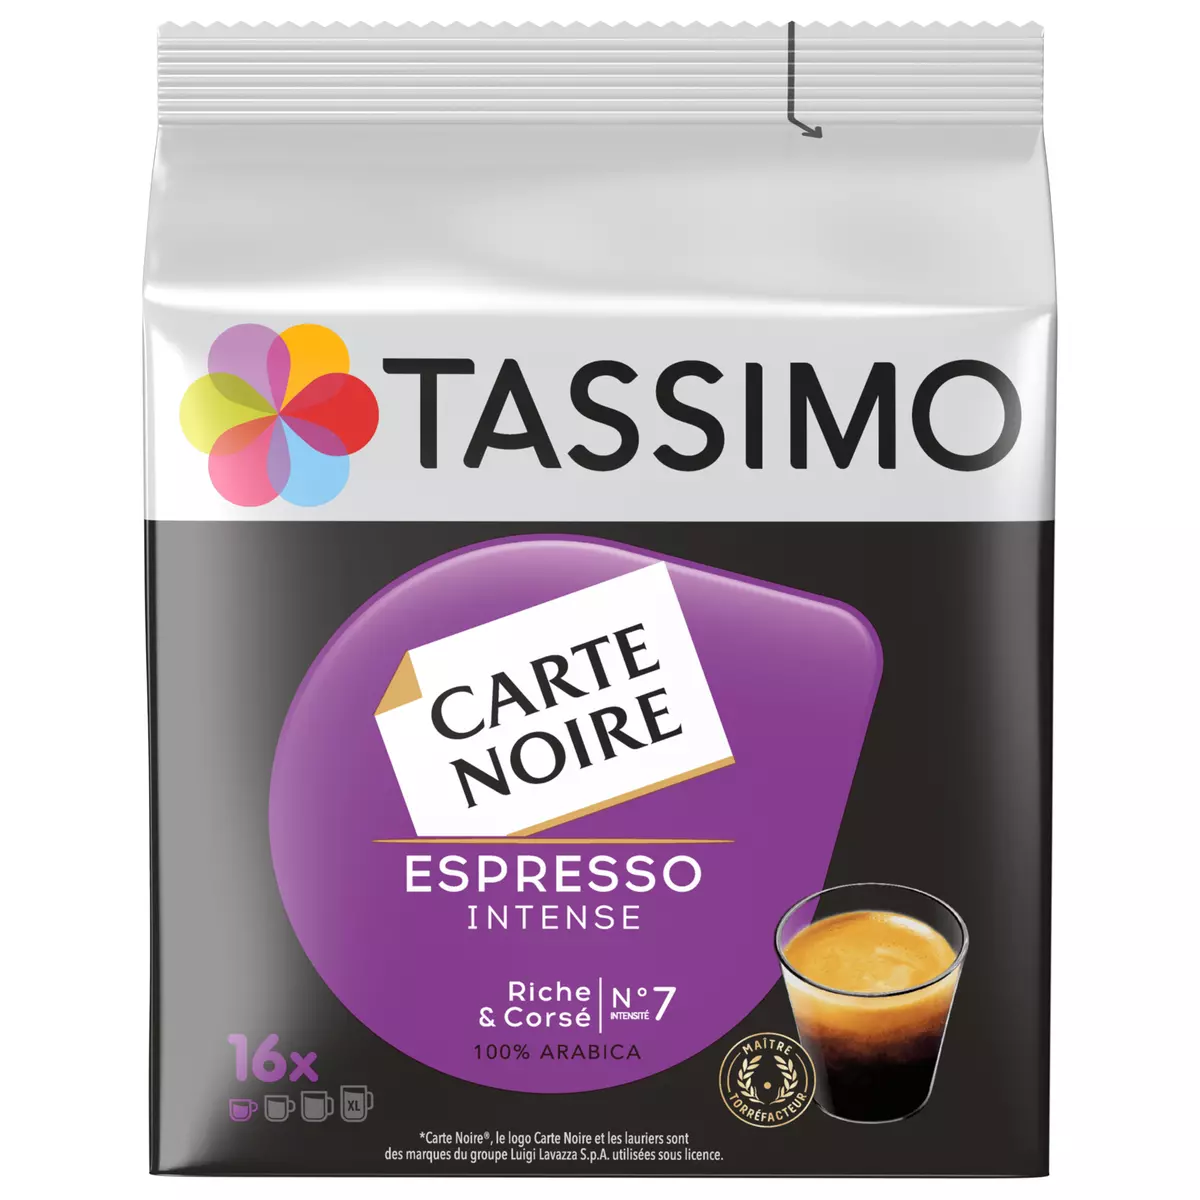 TASSIMO Dosettes de café carte noire espresso intense intensité 7 compatible Tassimo 16 dosettes 118g